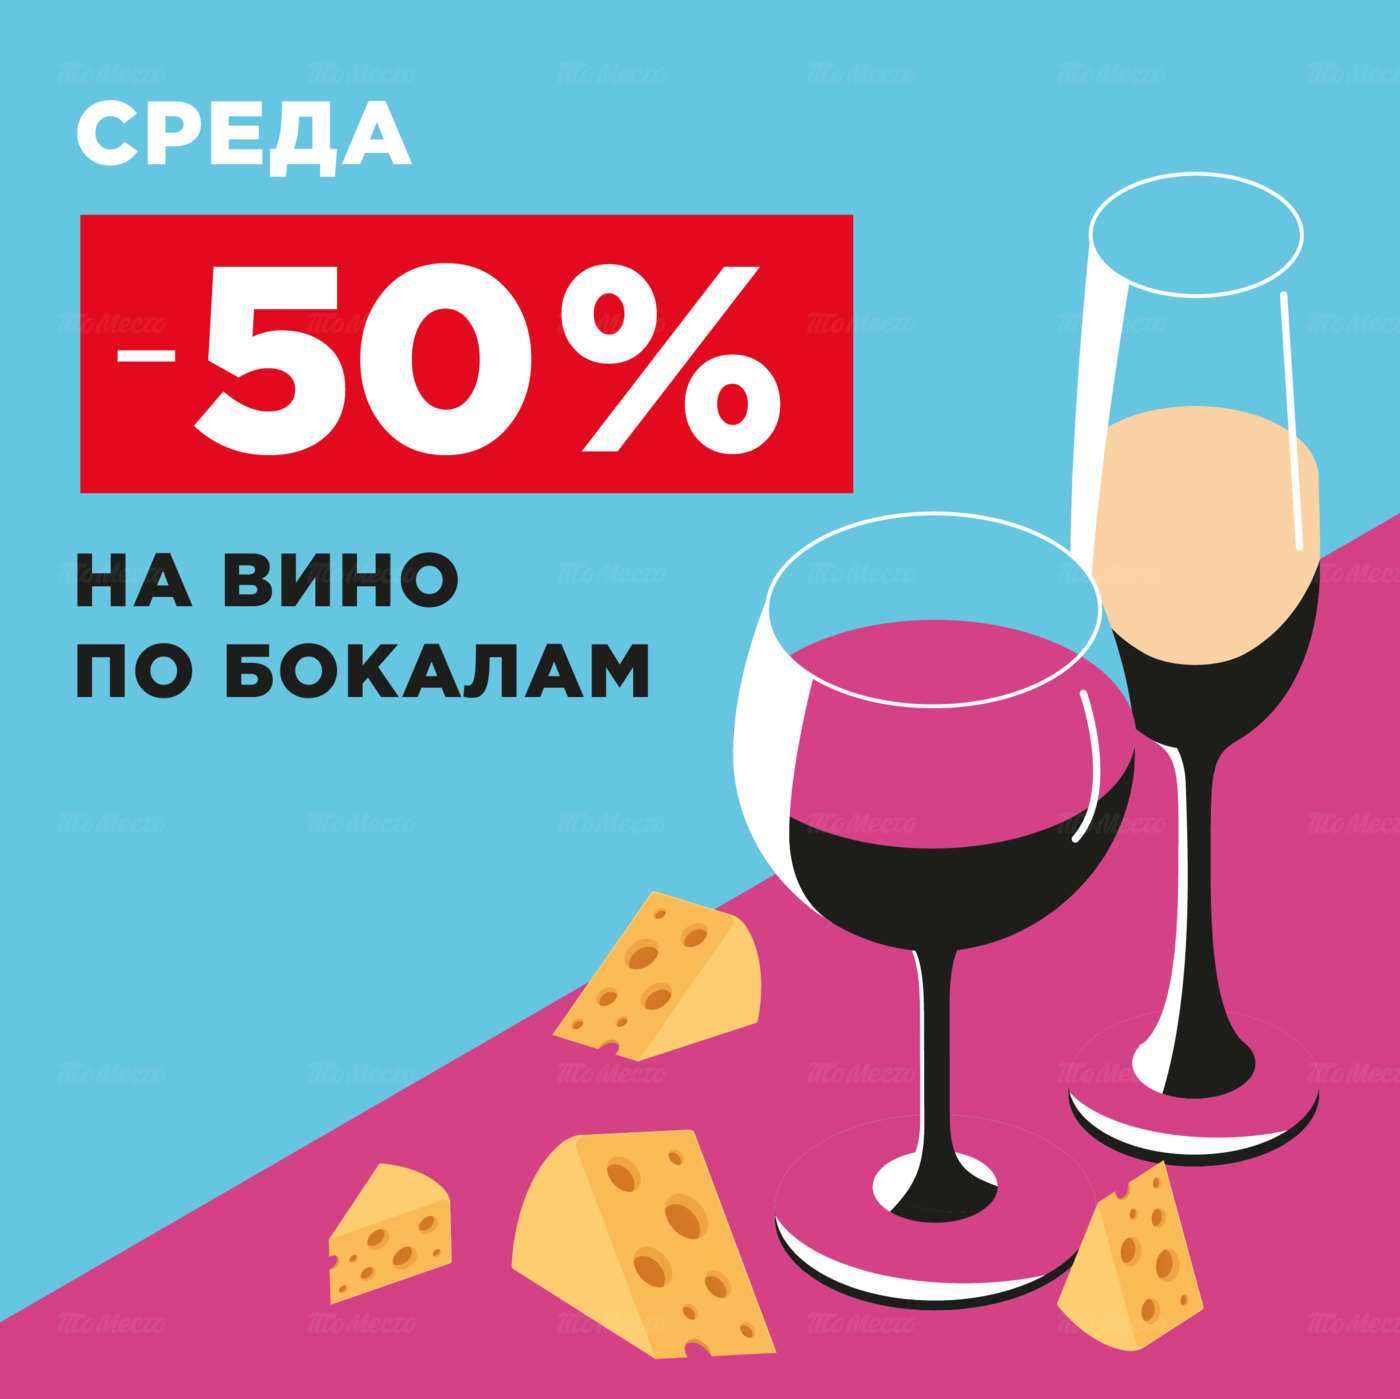 - 50% на виноградное по бокалам